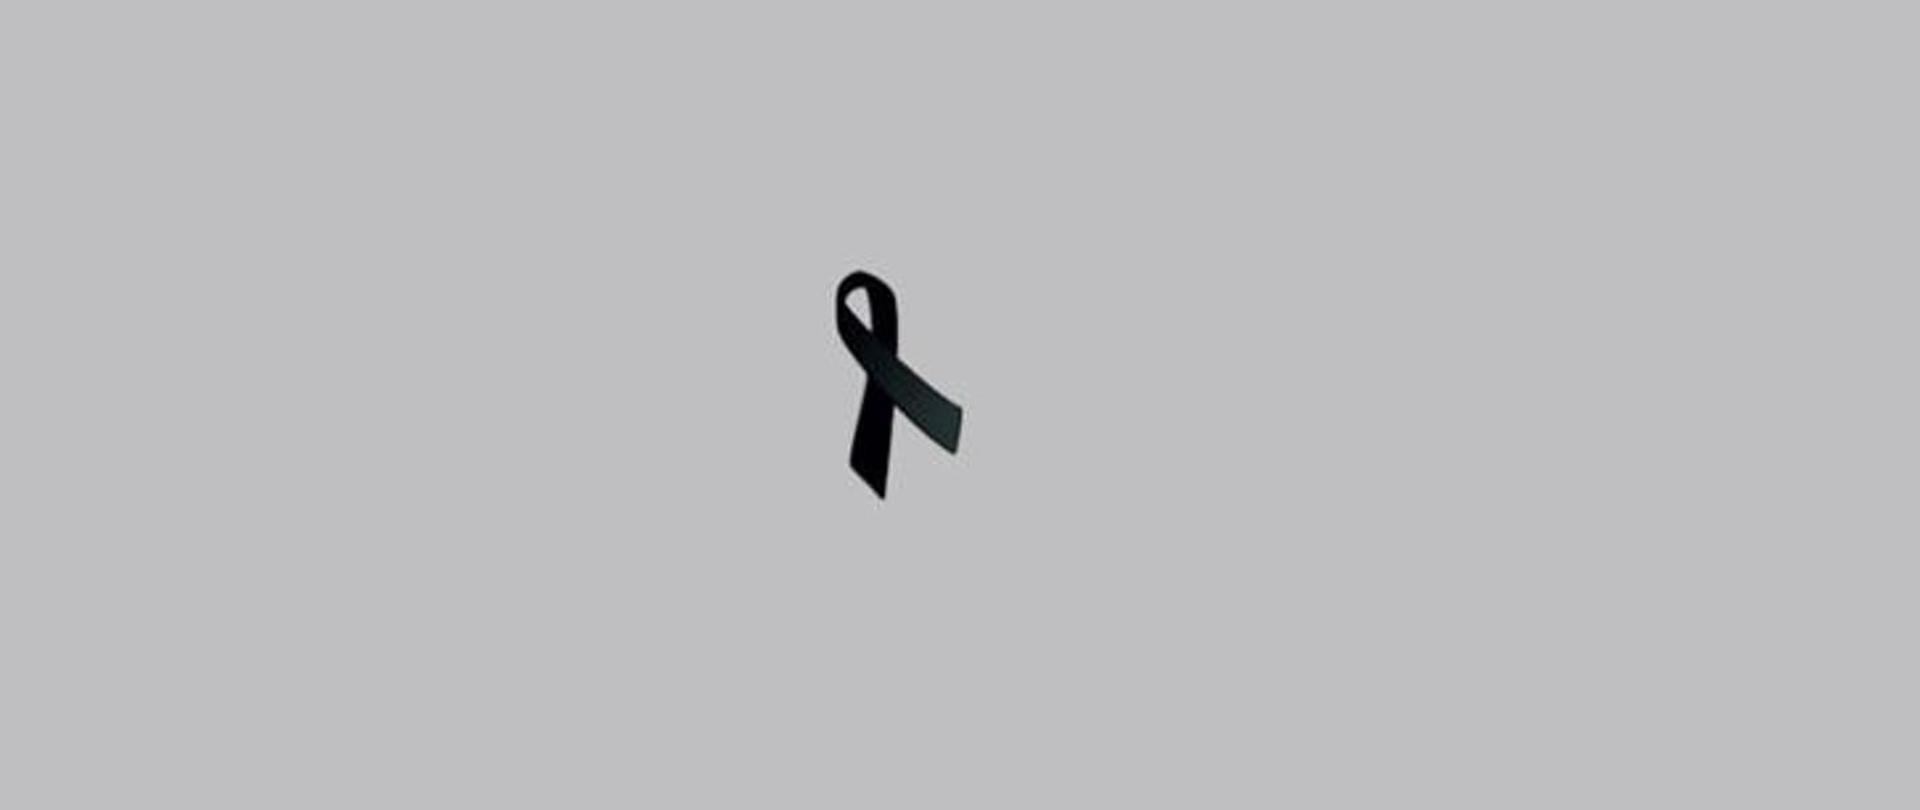 Czarna wstążka – symbol używany przez poszczególnych ludzi i organizacje, oznaczający żałobę.